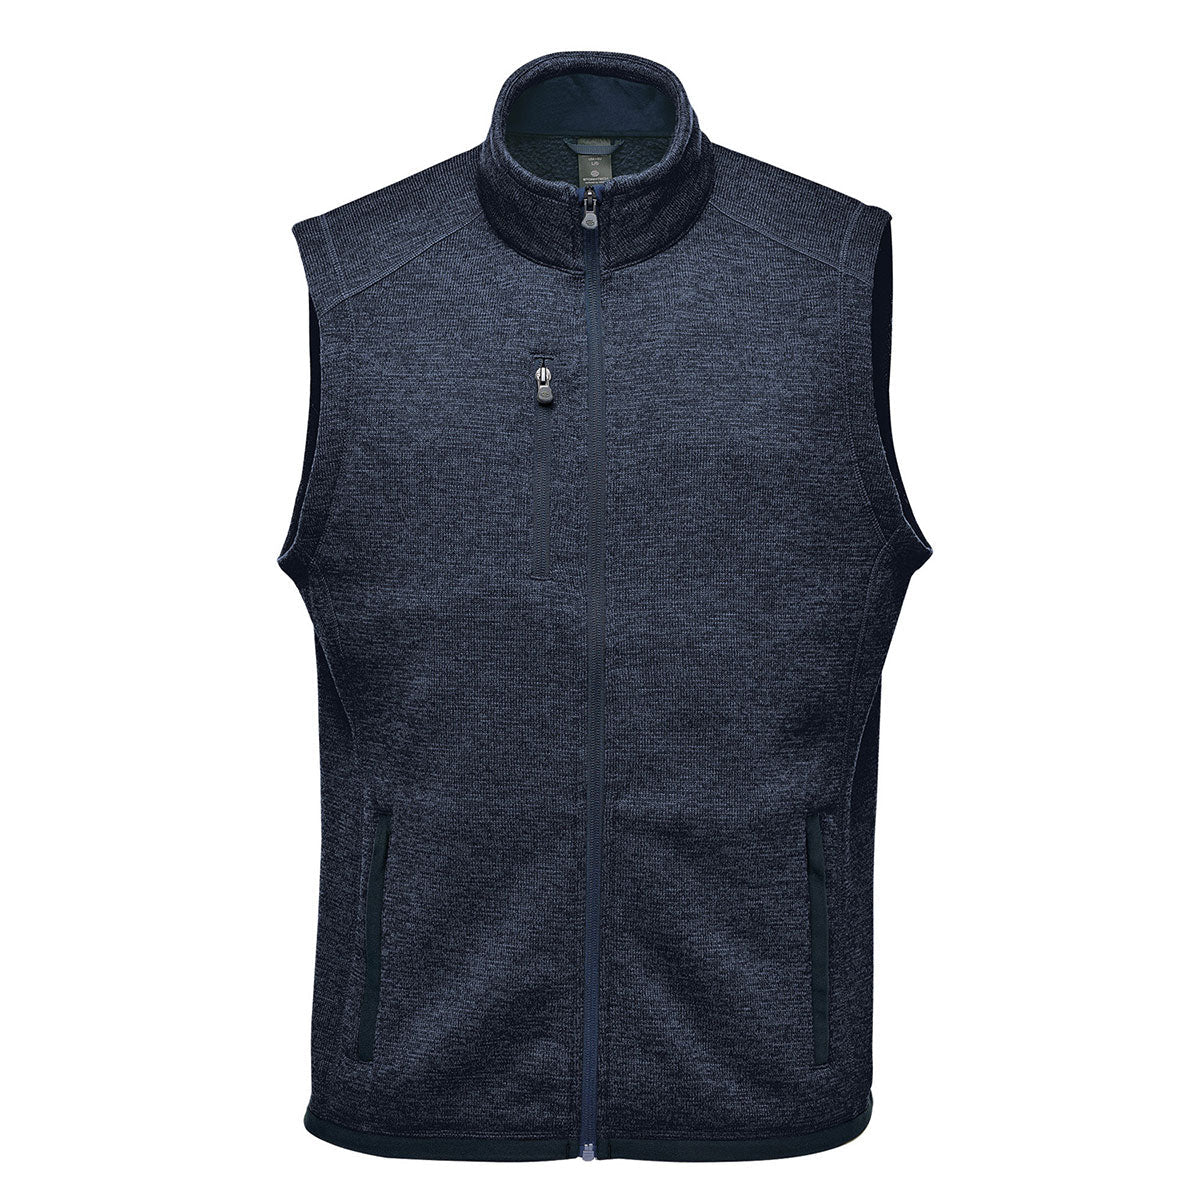 Men's Ridgeline Fleece Vest